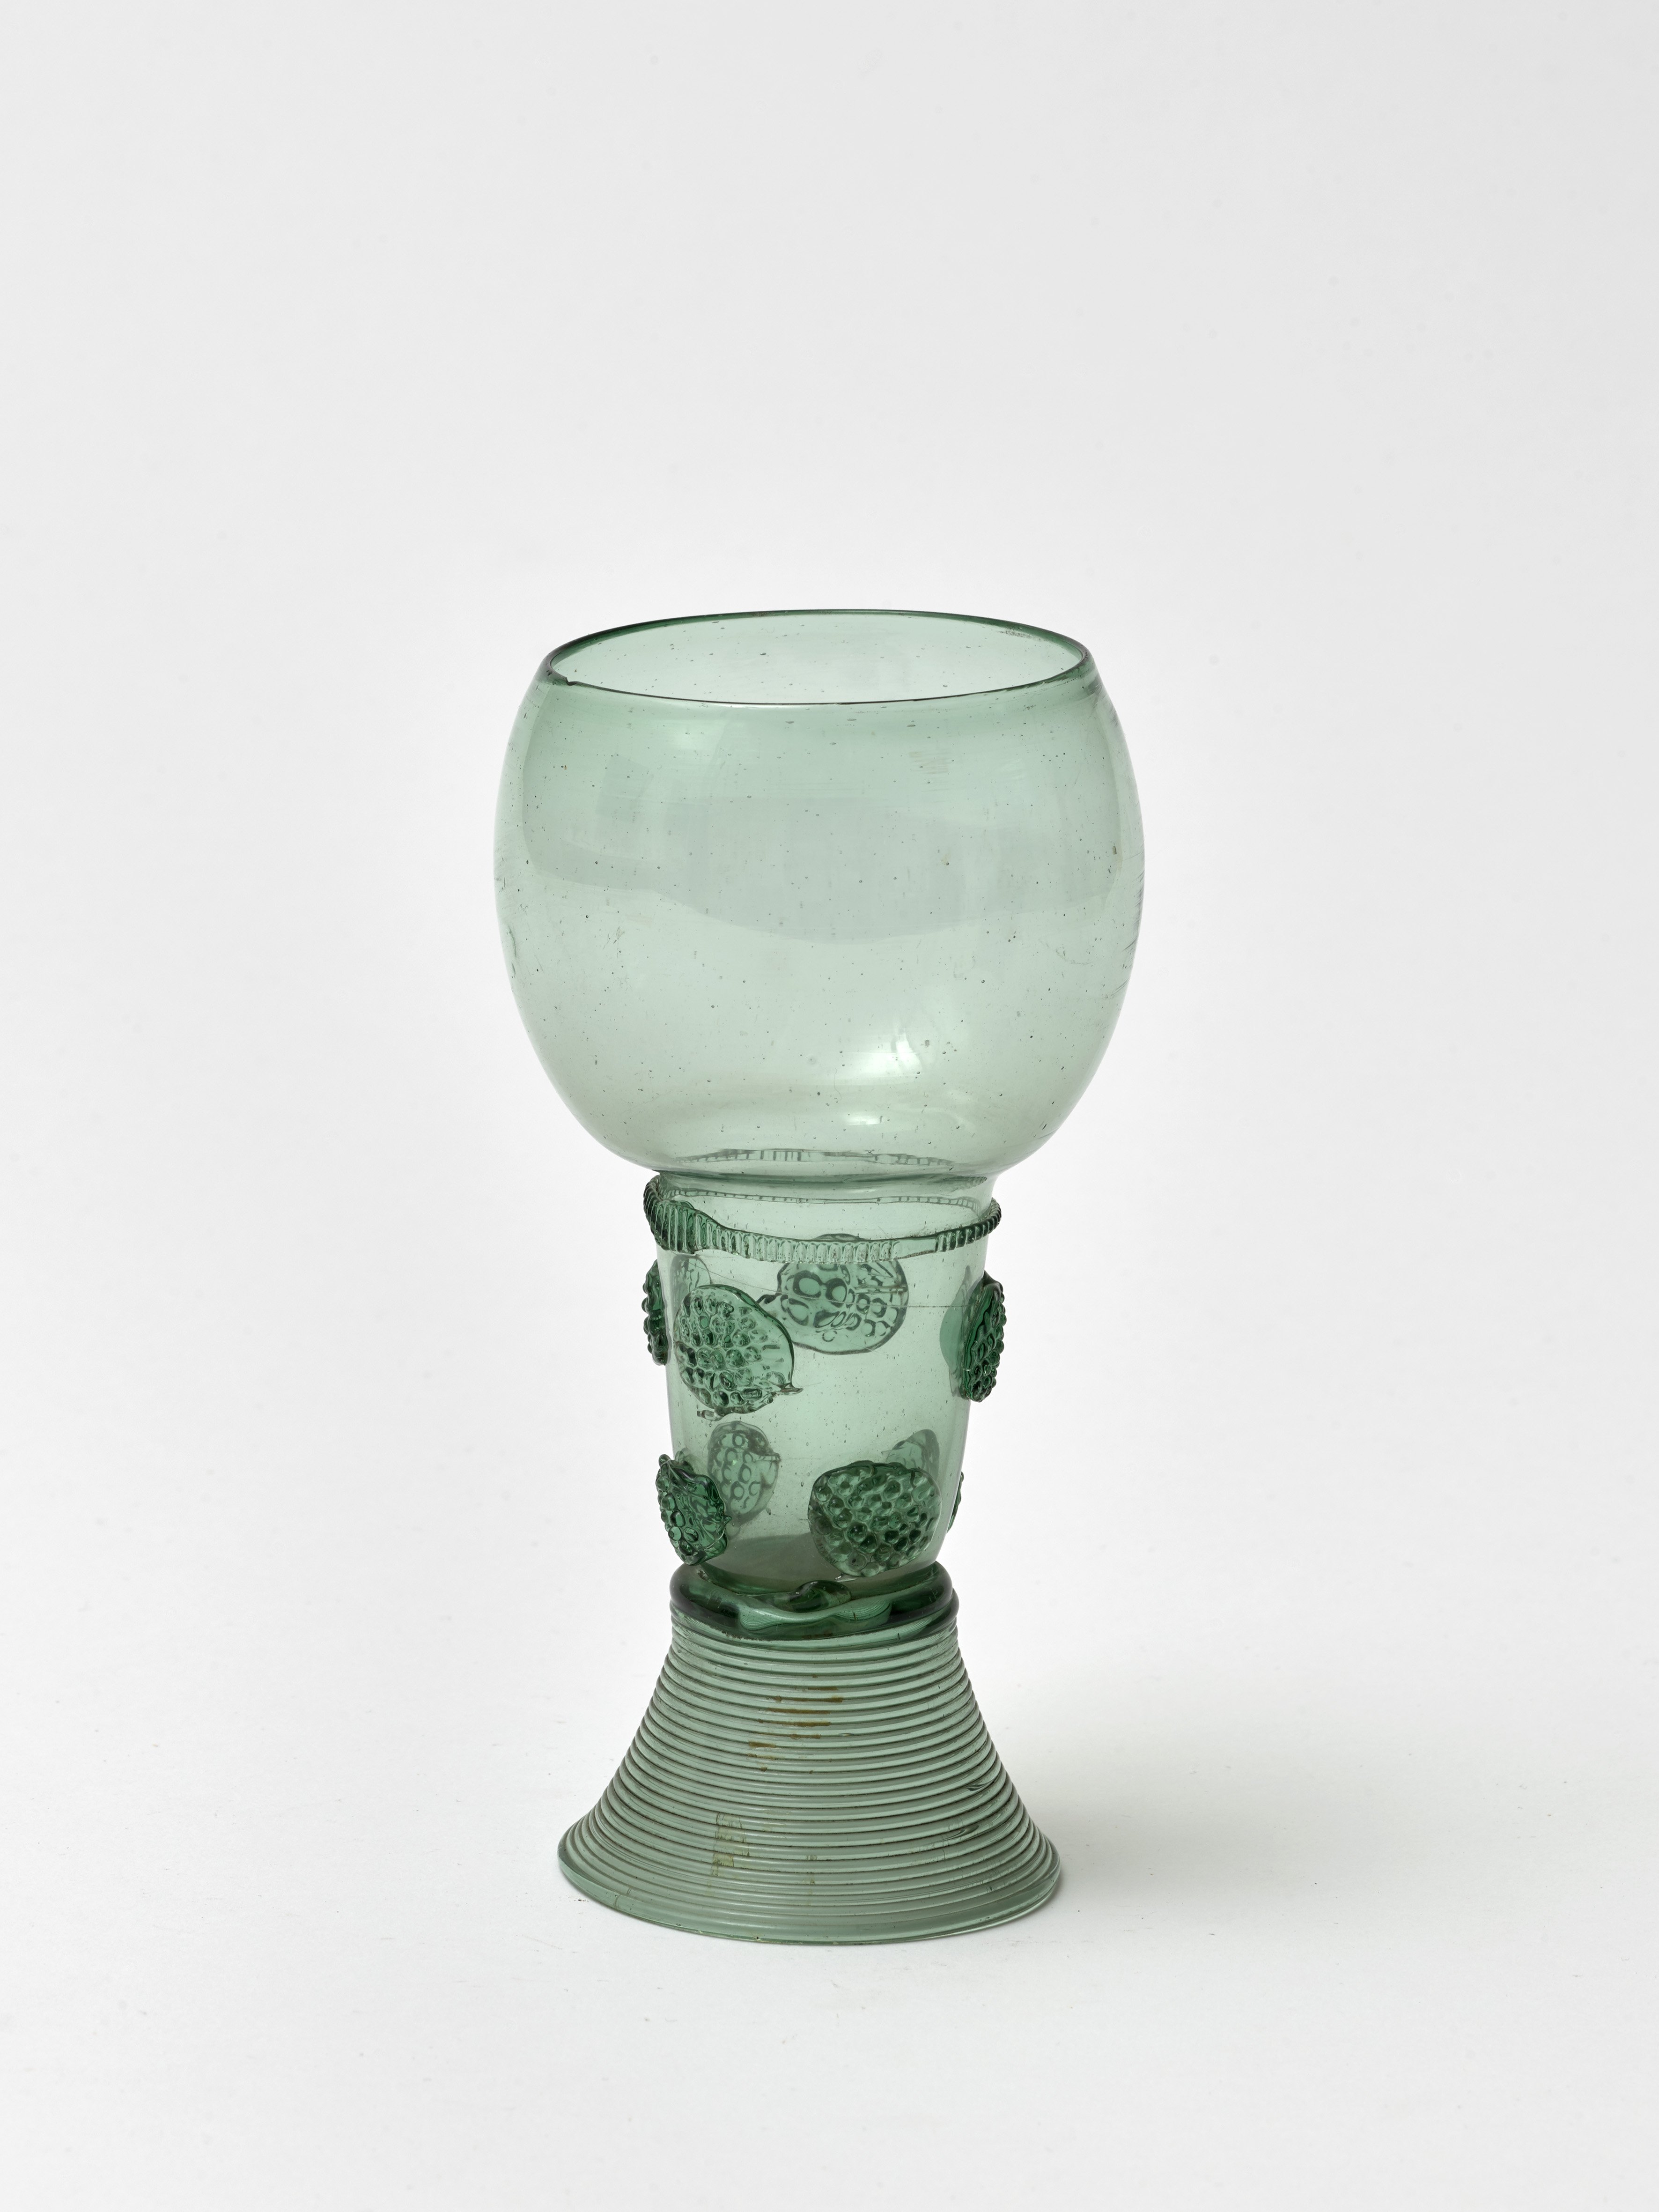 Römerglas, 17. Jahrhundert (Städtisches Museum Schloss Rheydt CC BY)